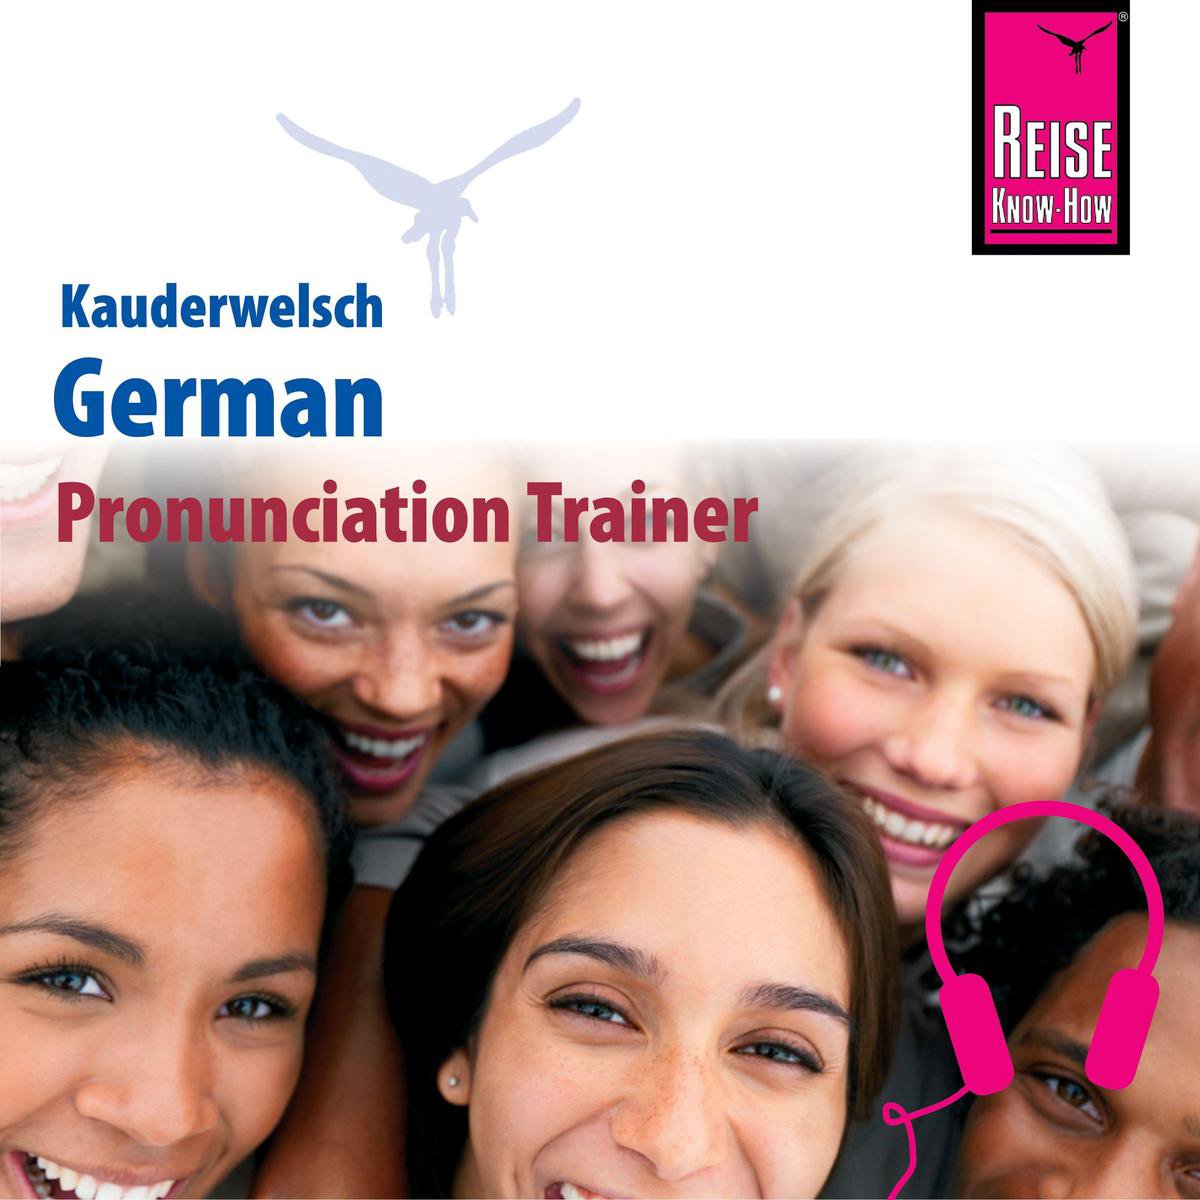 Kauderwelsch Pronunciation Trainer German - Word by Word - Bob Ordish